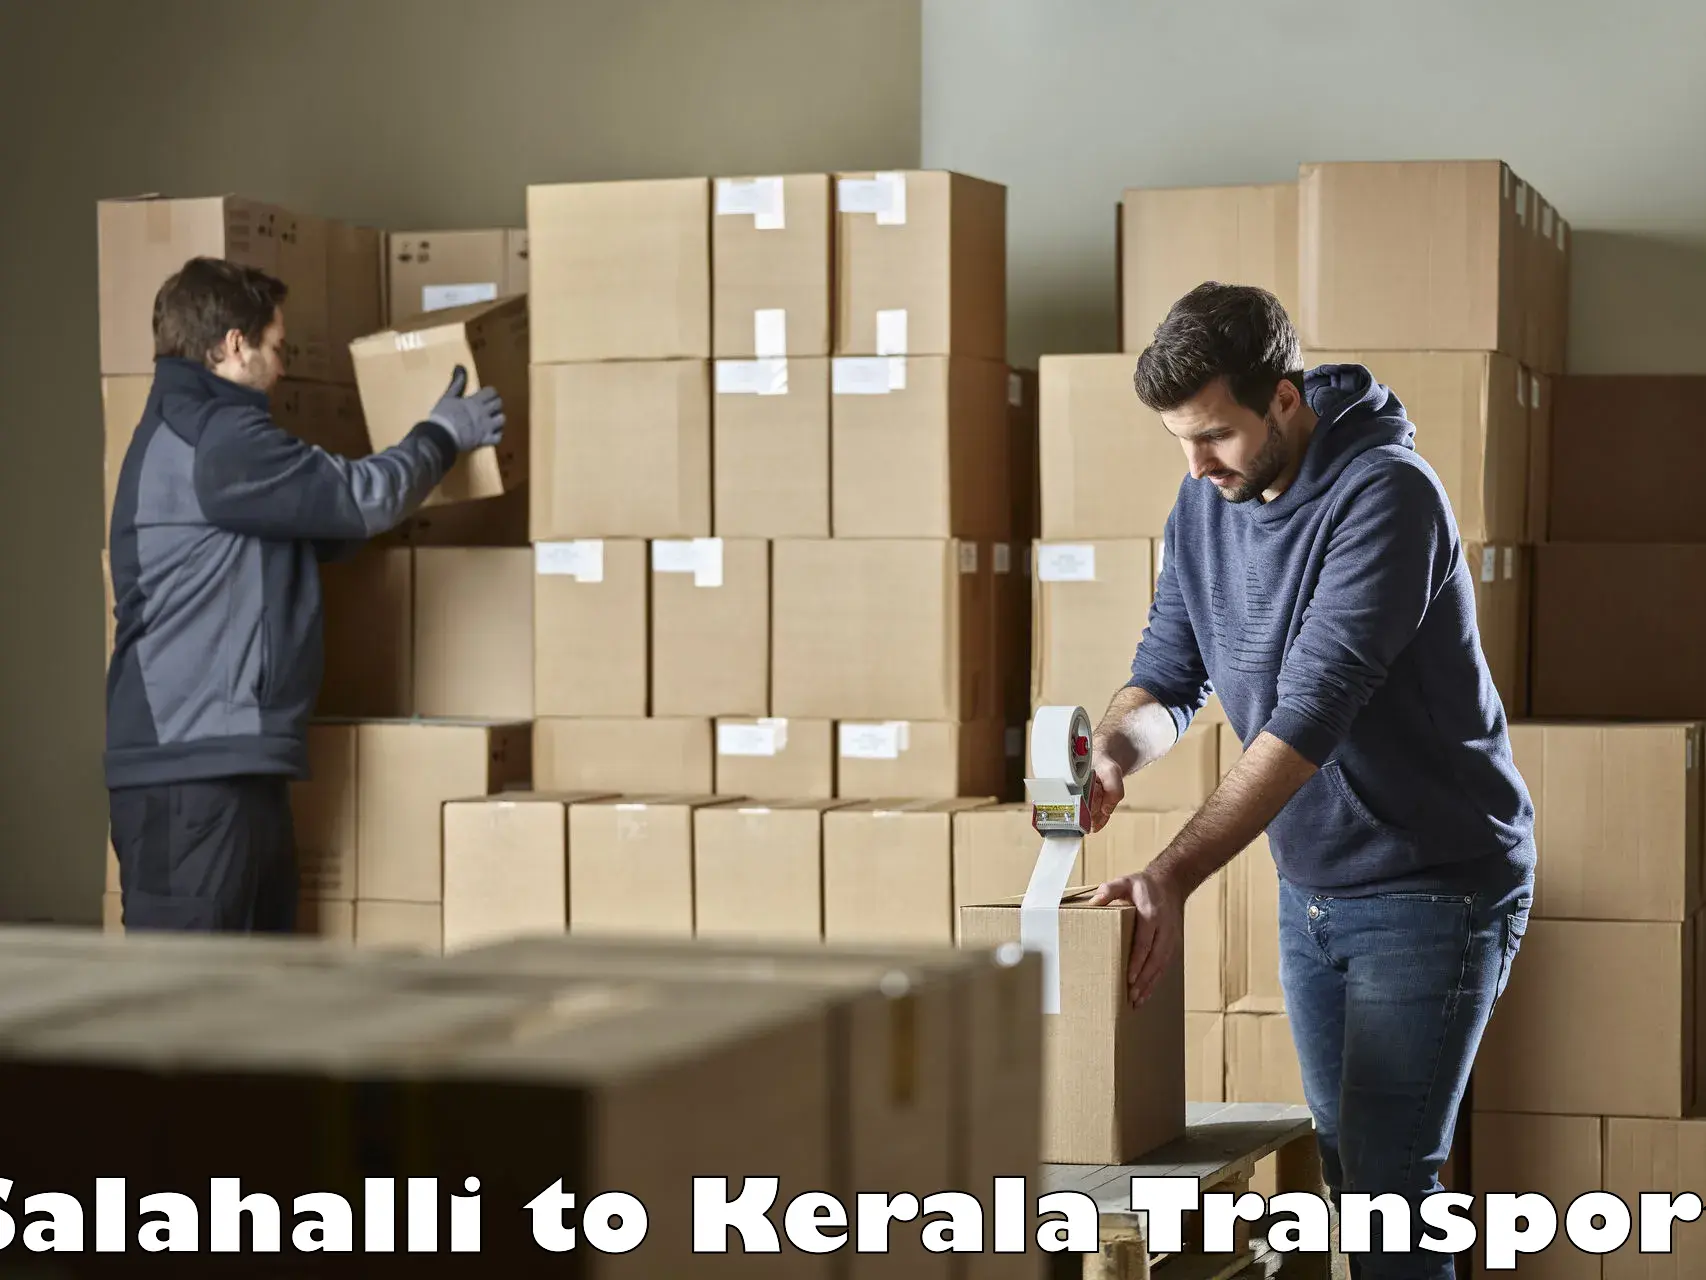 Nearest transport service Salahalli to Pallikkara